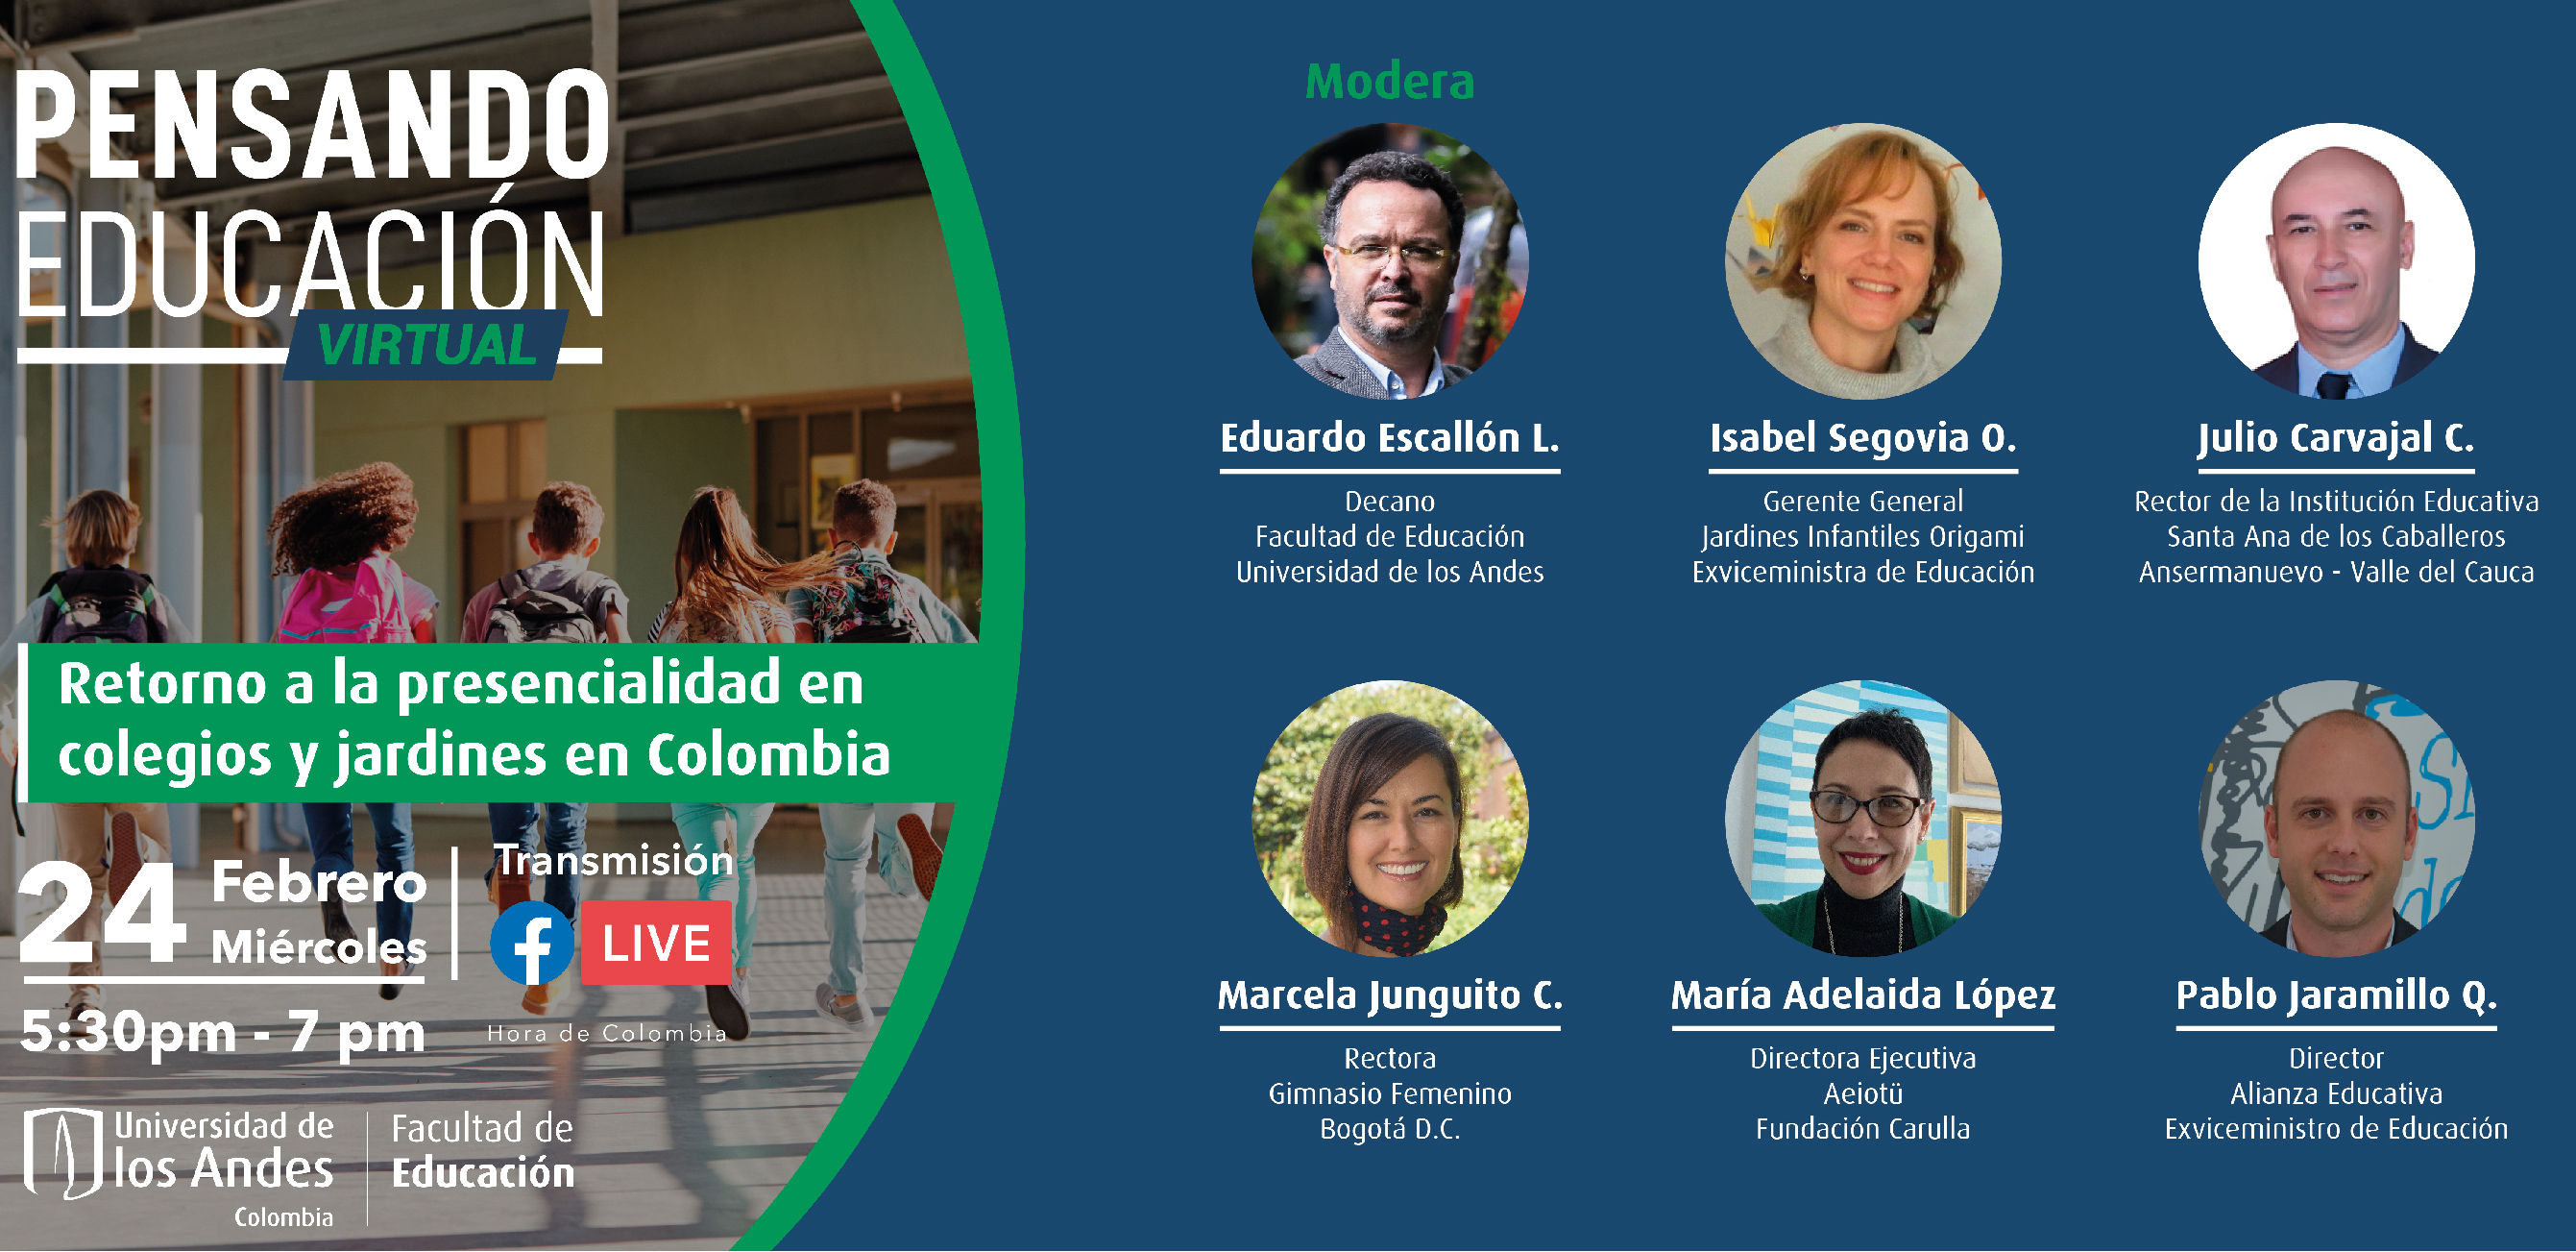 Pensando Educación: retorno a la presencialidad en colegios y jardines en Colombia